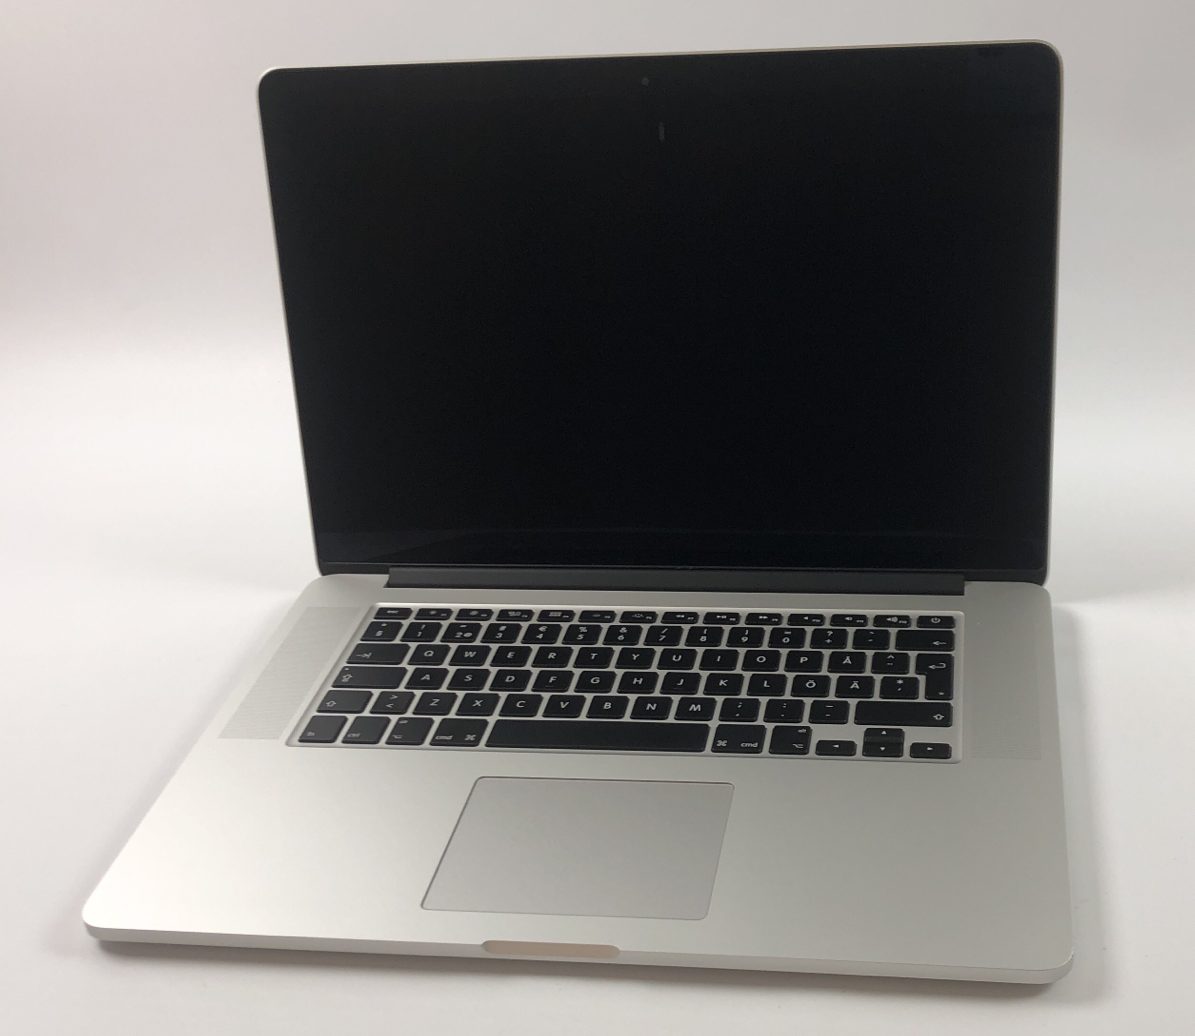 MacBook Pro Retina 15" Mid 2015 (Intel Quad-Core i7 2.2 GHz 16 GB RAM 256 GB SSD), Intel Quad-Core i7 2.2 GHz, 16 GB RAM, 256 GB SSD, Bild 1